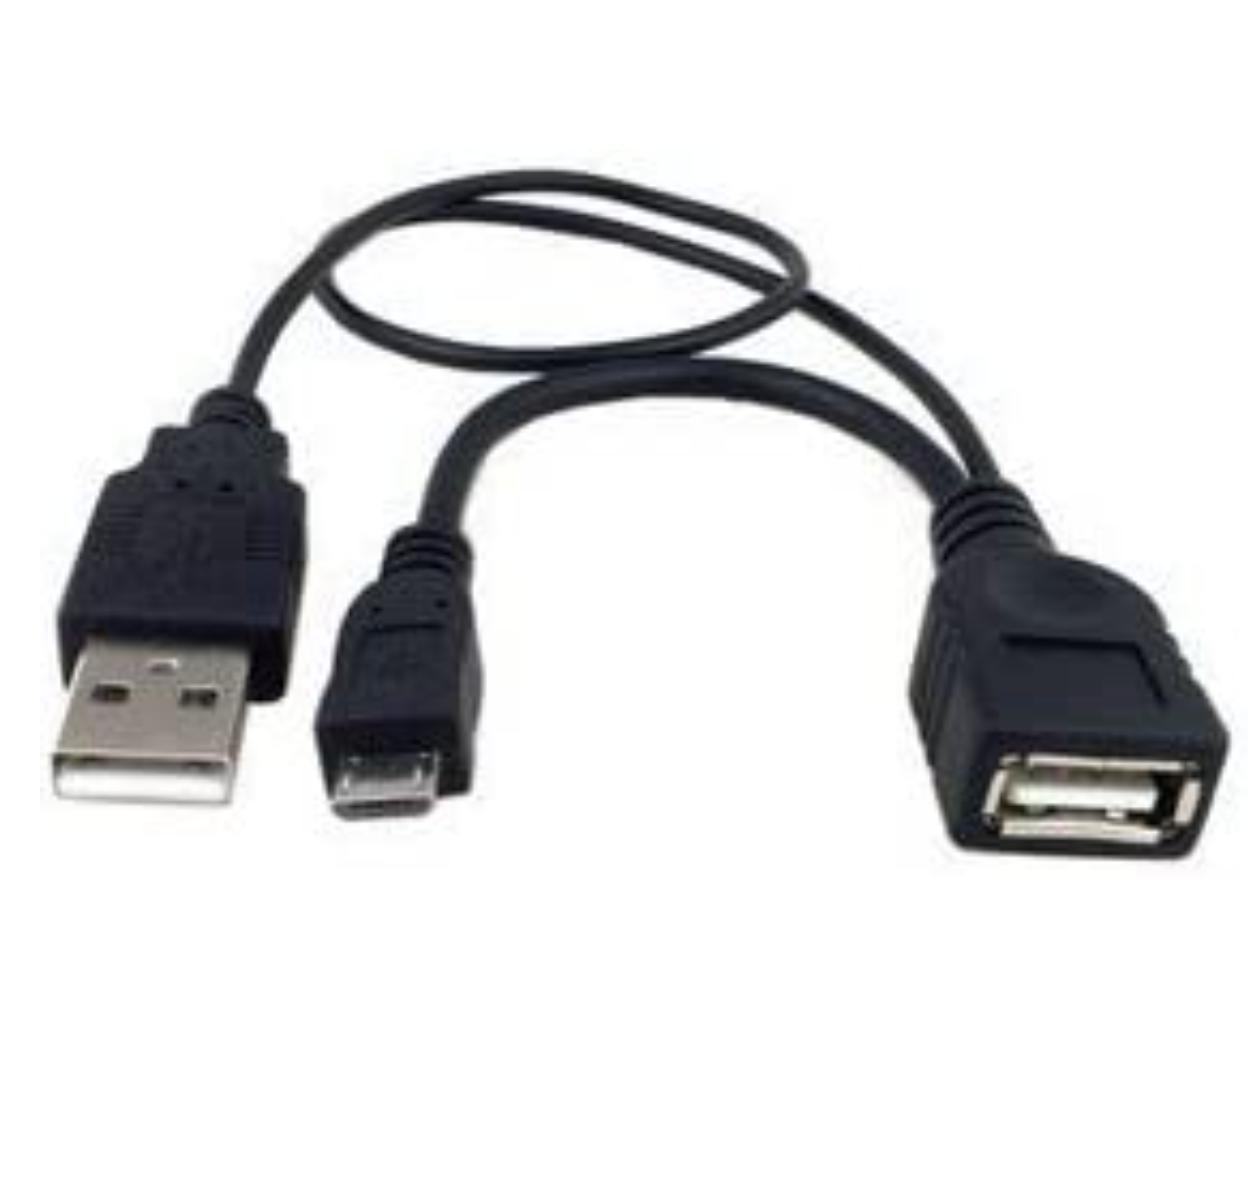 最新発見 人気上昇中 OTGケーブル micro USB-USB A メス NOTE USB機器給電端子付 スマホ用 Galaxy